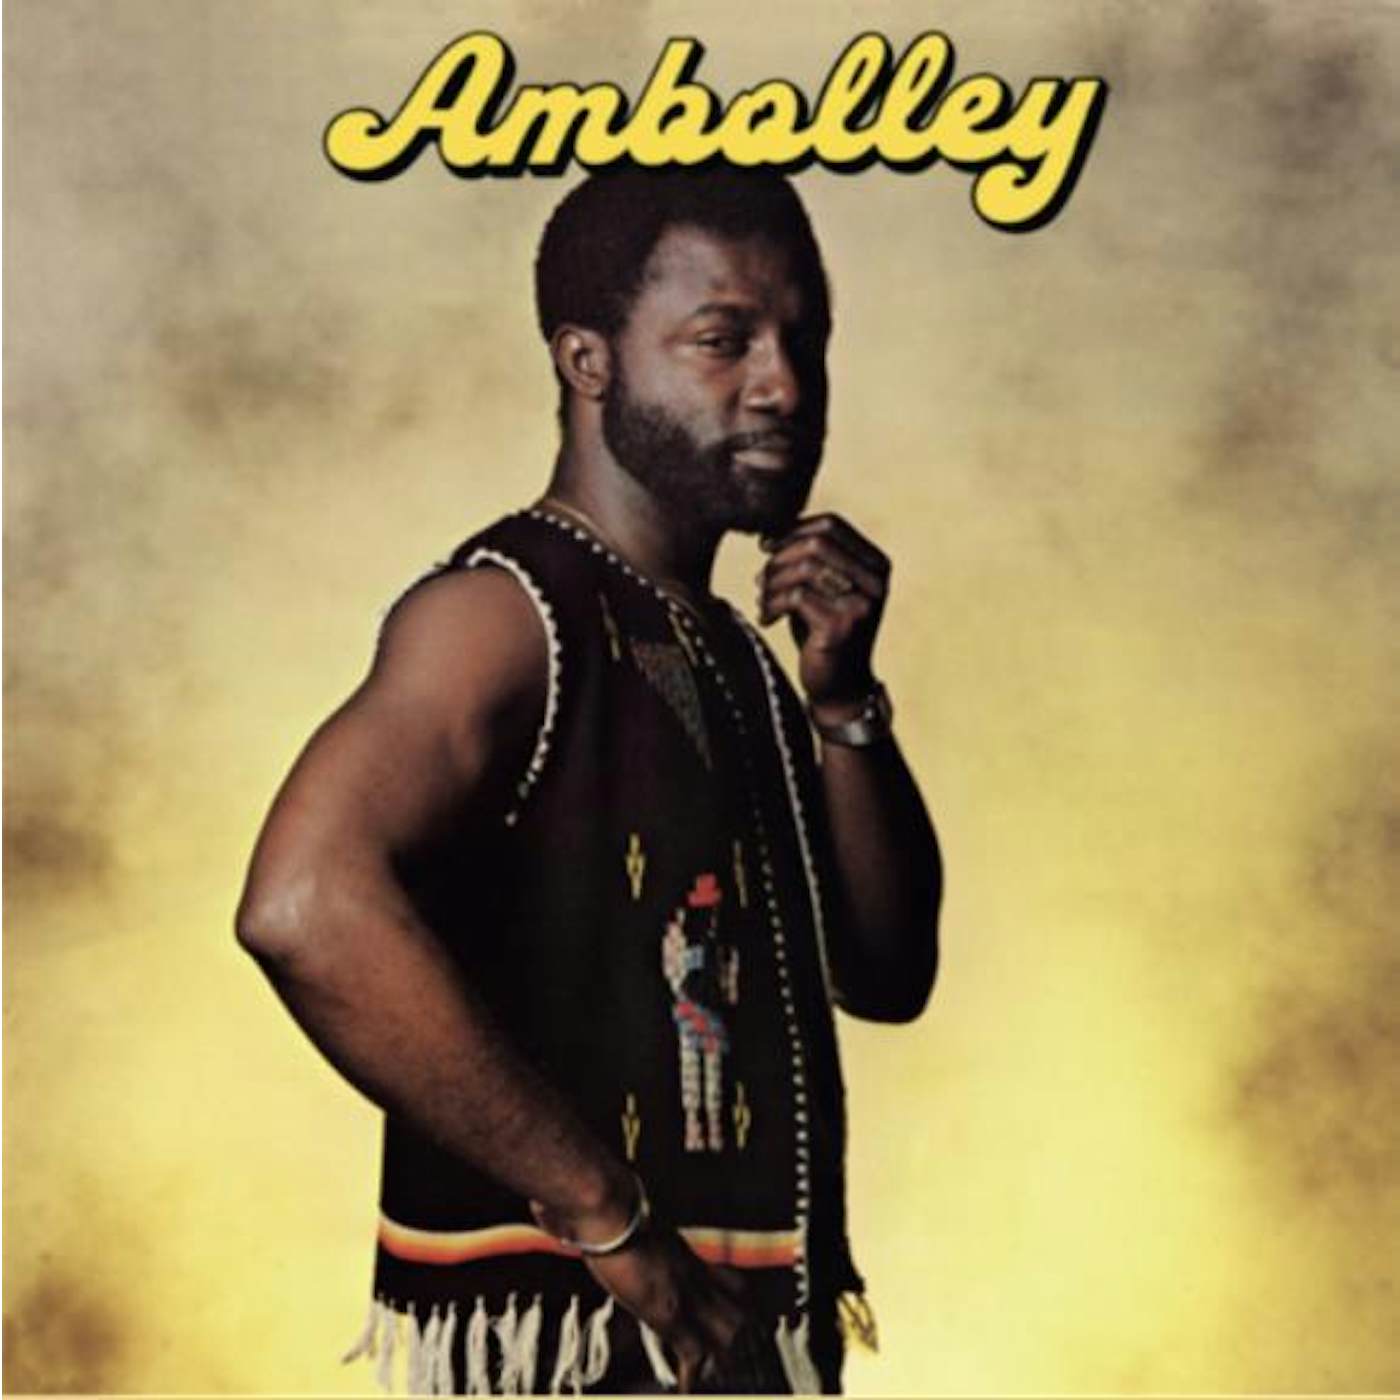 Gyedu-Blay Ambolley Ambolley Vinyl Record